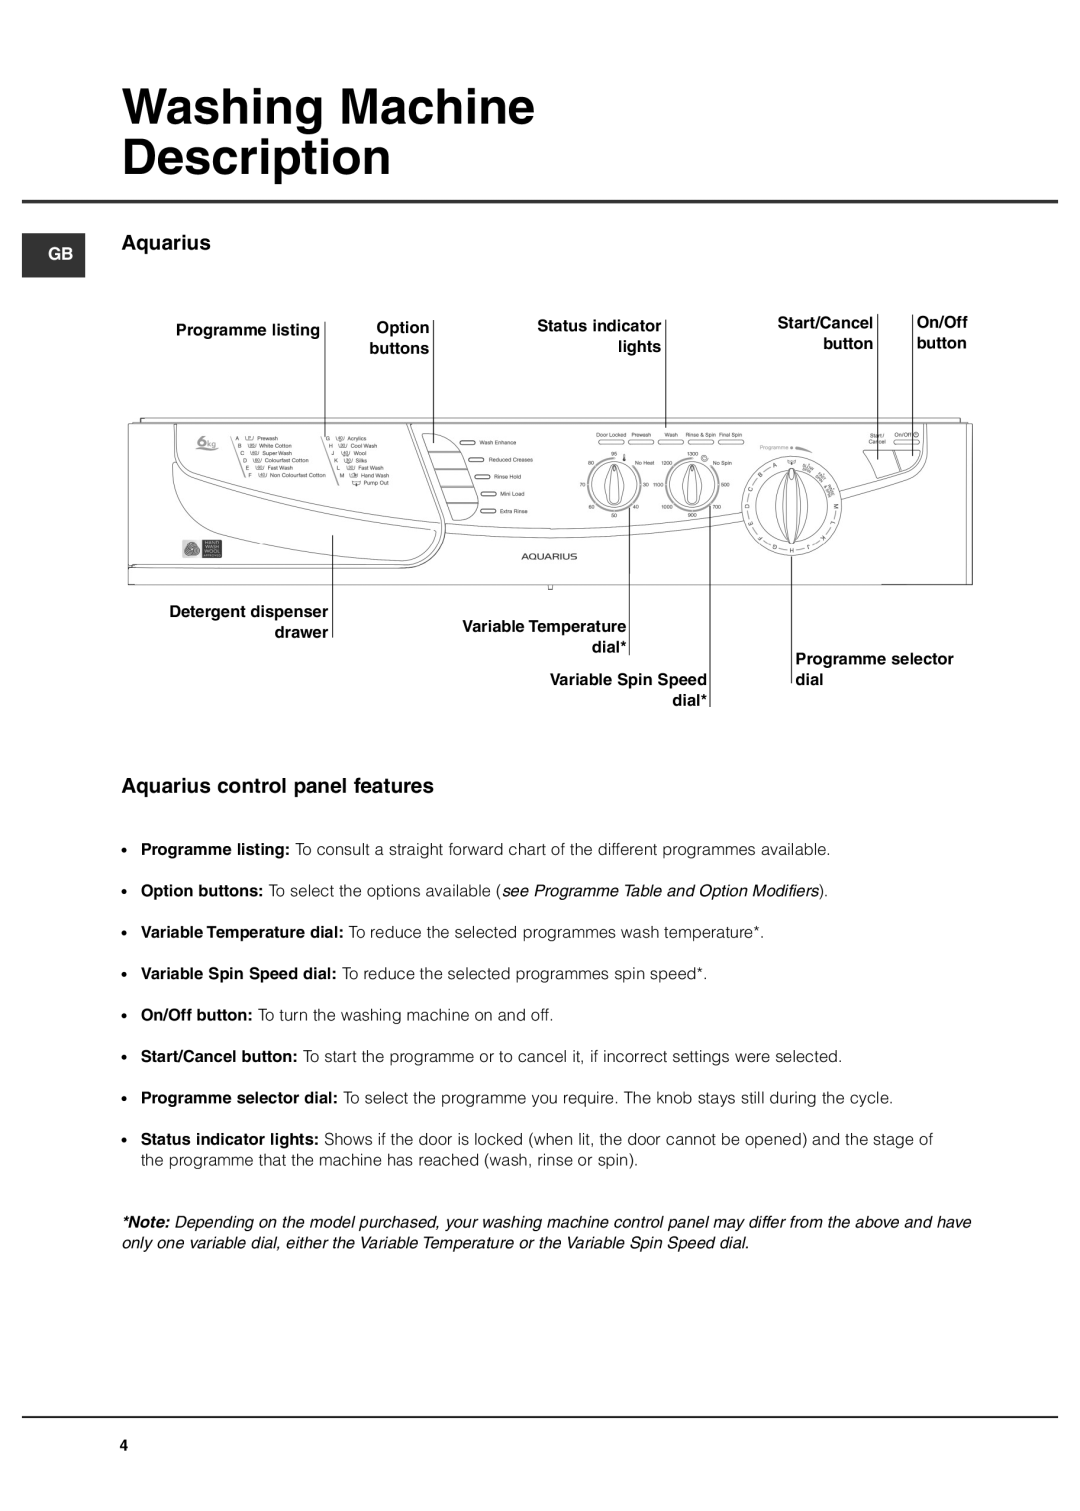 Hotpoint Aquarius+ manual Washing Machine Description, GB Aquarius, Aquarius control panel features 